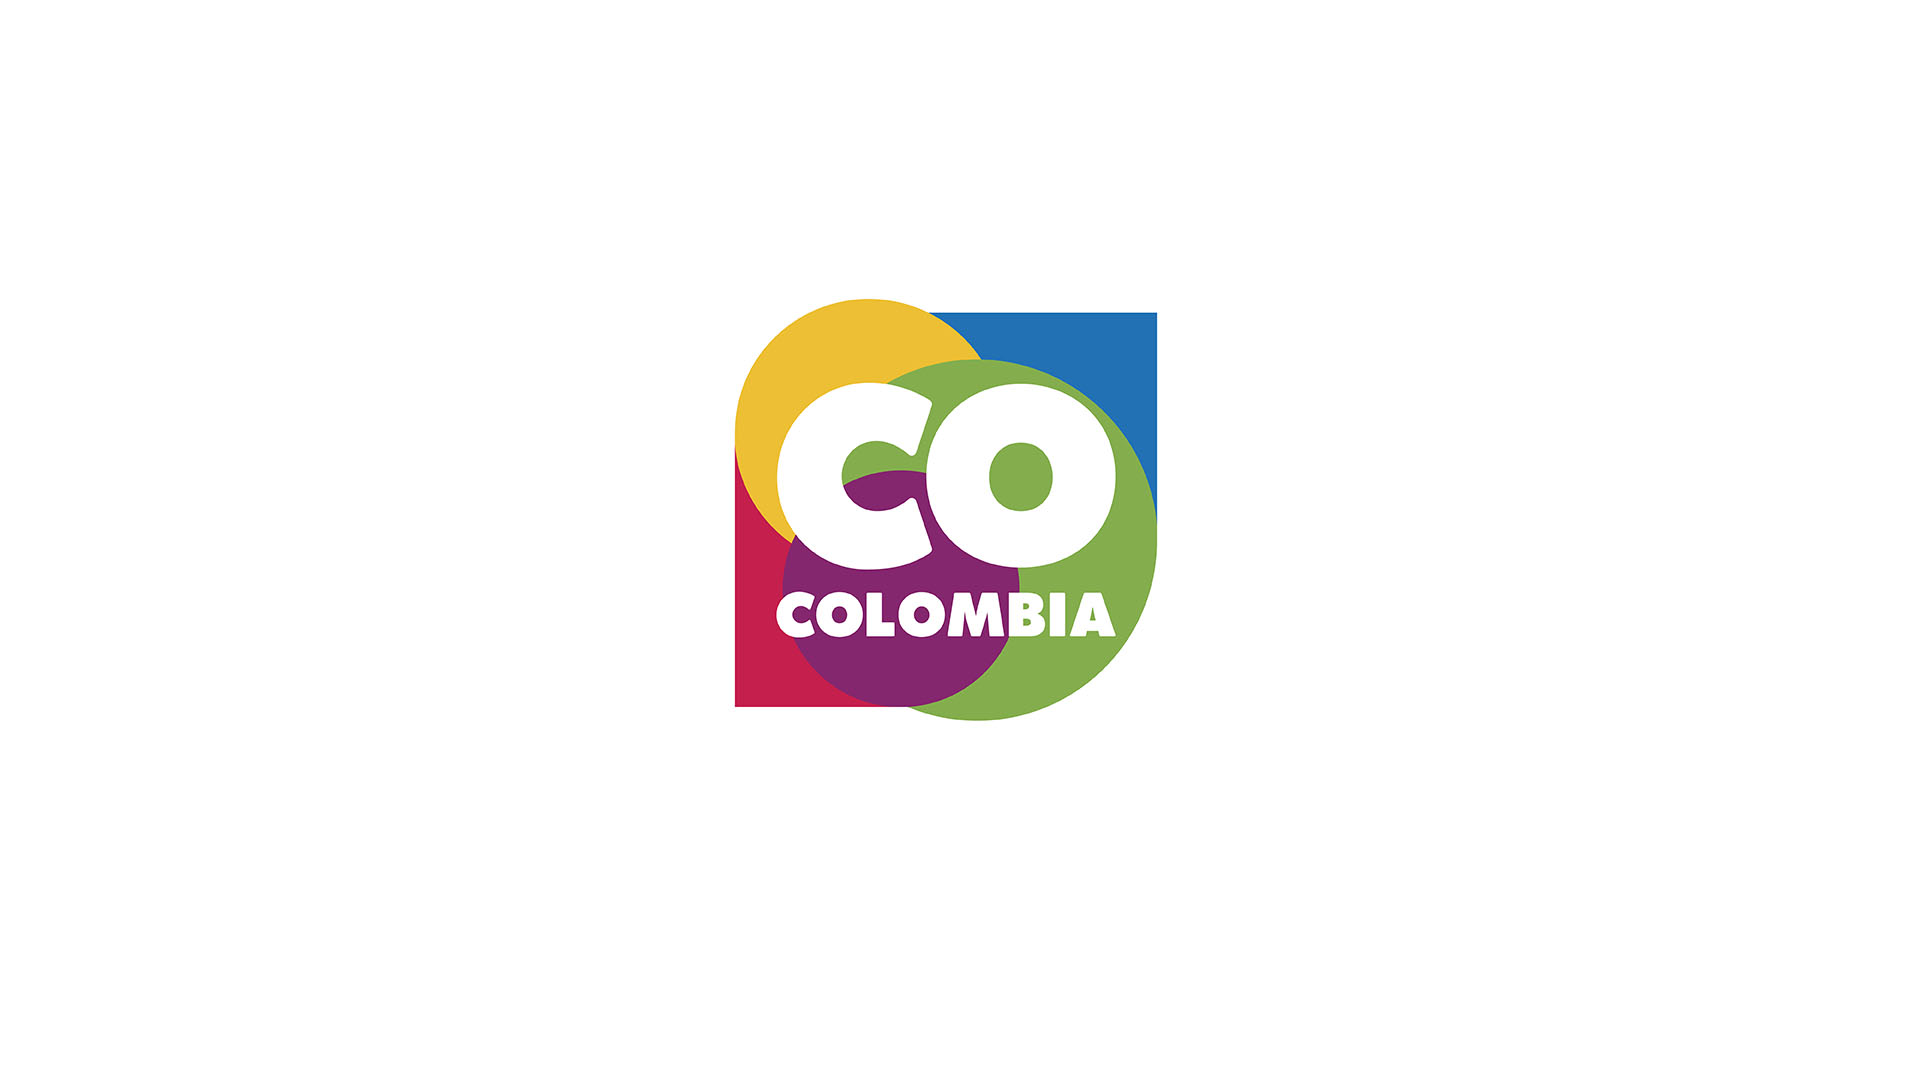 Creación de marca regional Colombia. Diseño gráfico